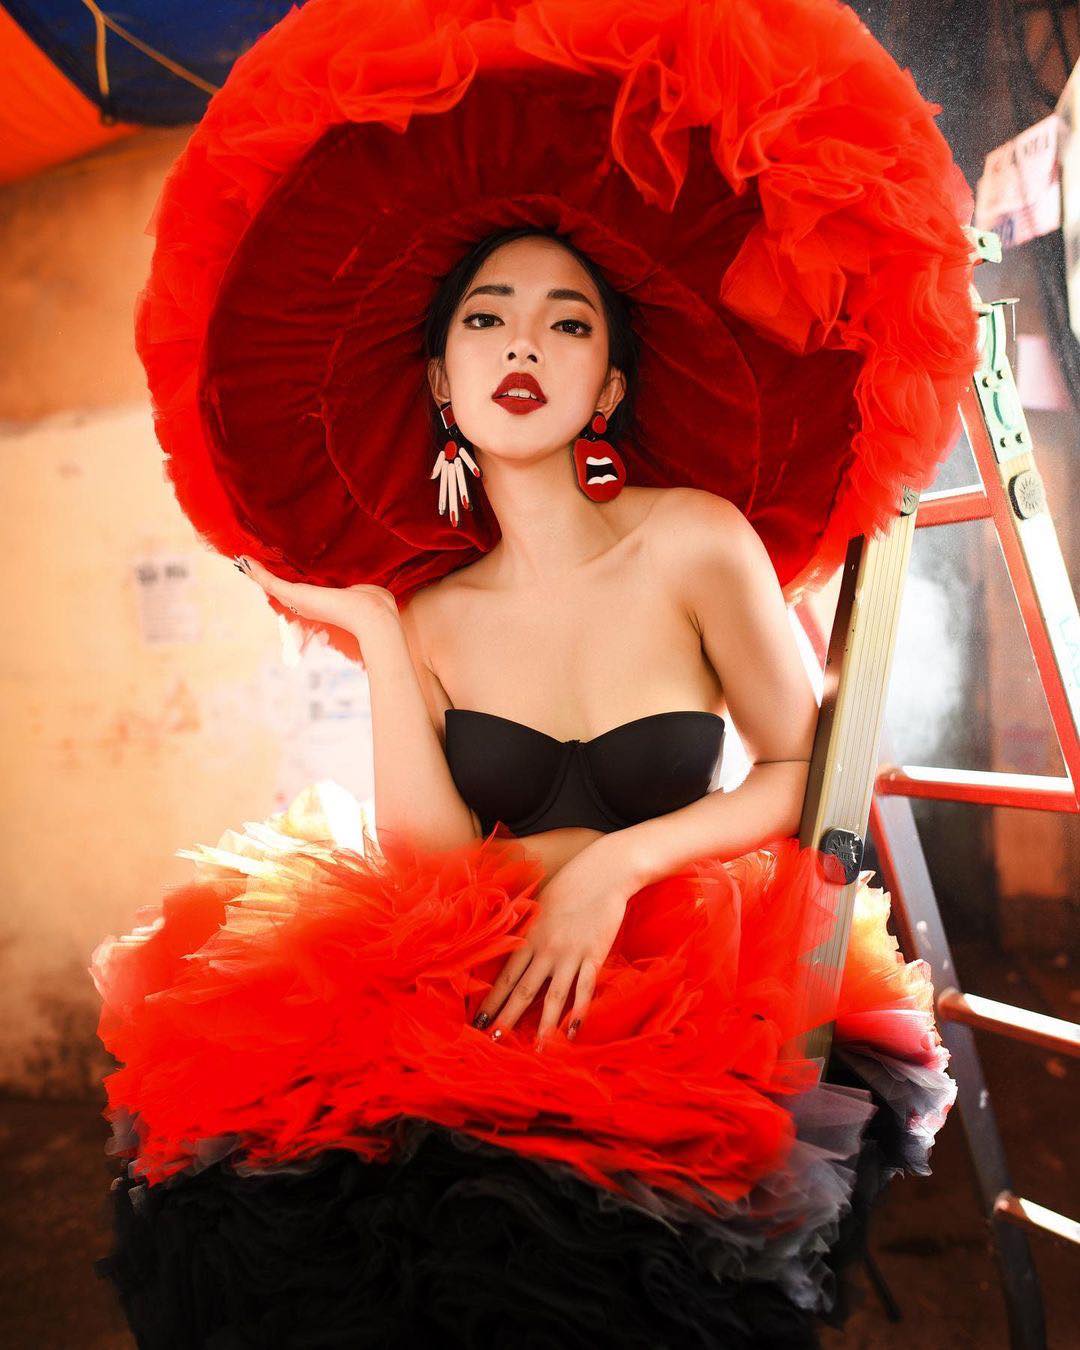 Châu Bùi chia sẻ bộ ảnh ấn tượng được cô chụp trong 1 con hẻm nhỏ tại phố Khâm Thiên, Hà Nội từ năm 2017. Có thể thấy ngay những năm đầu vào nghề, nữ người mẫu đã có phong cách và thần thái ấn tượng, thu hút.